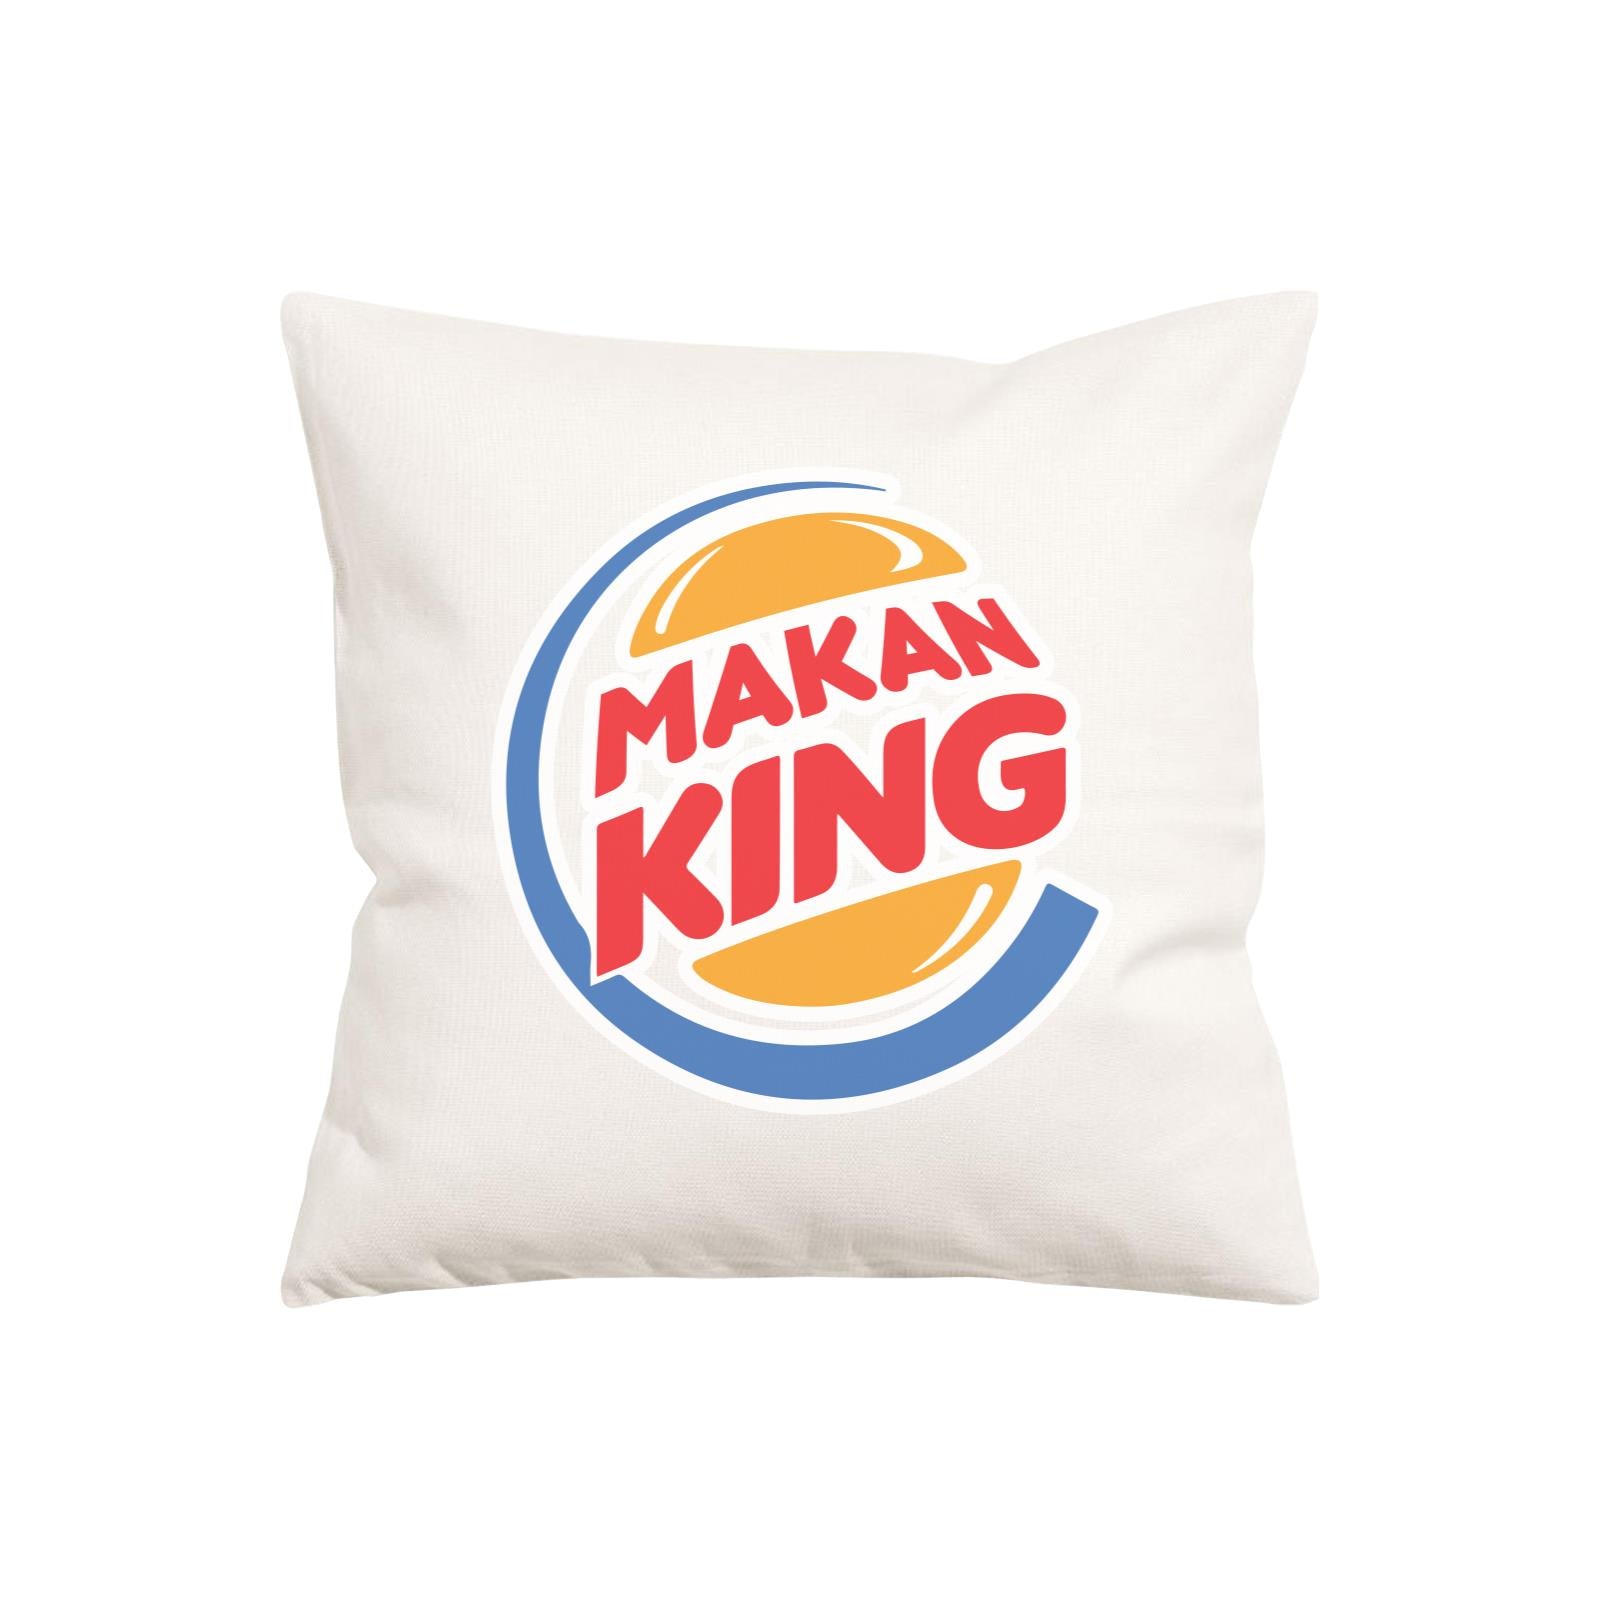 Slang Statement Makan King Pillow Cushion